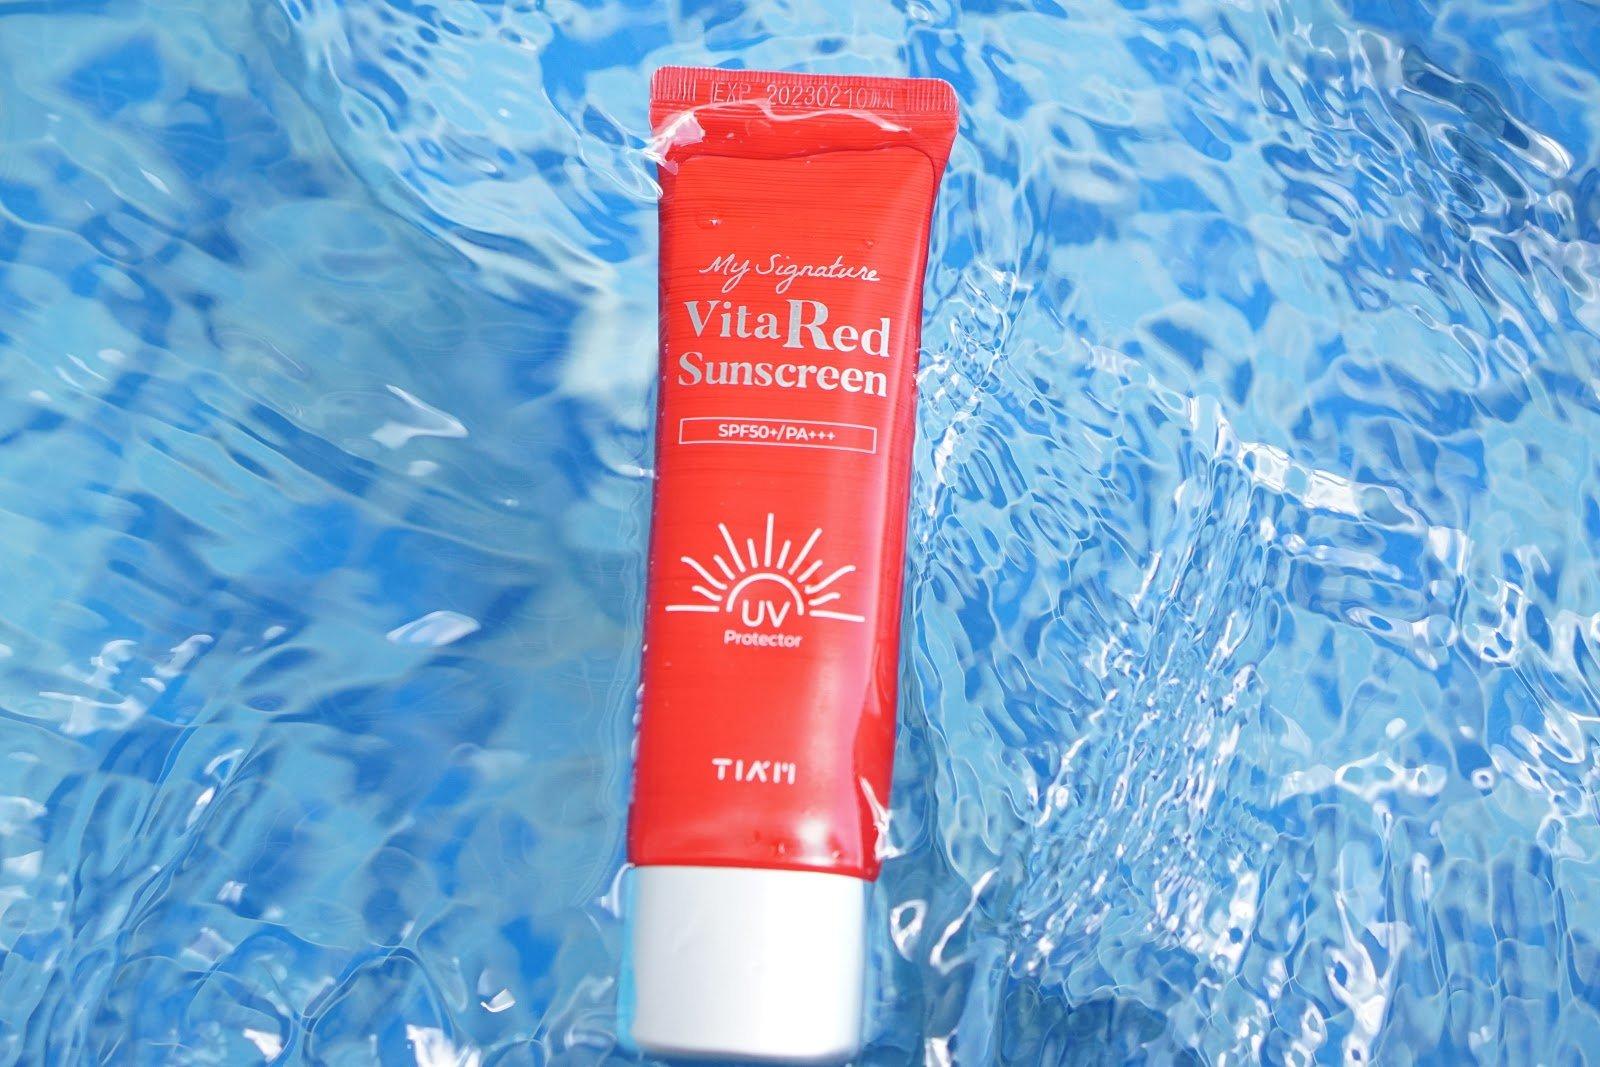 Tiam Vita Red Sunscreen không chứa các hóa chất độc hại, đặc biệt an toàn cho da kể cả da nhạy cảm (Nguồn: Internet).